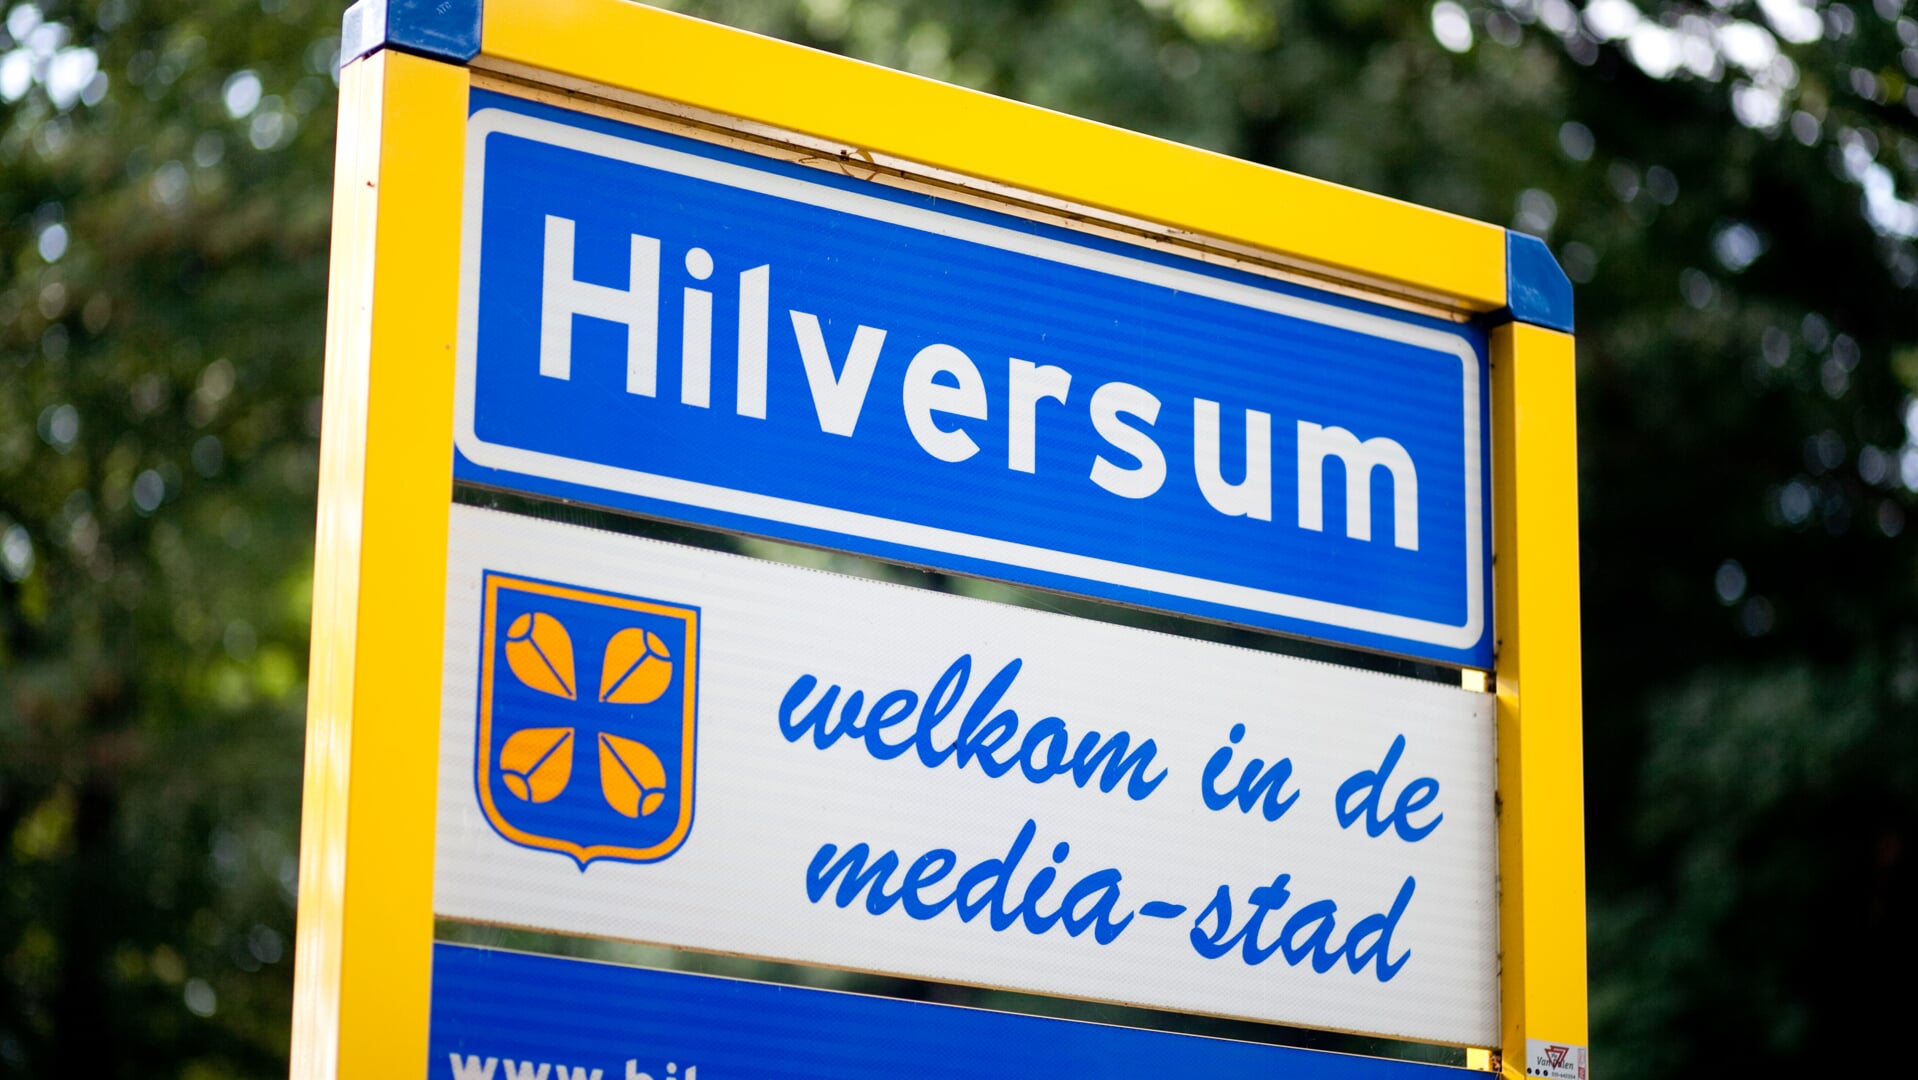 Is Hilversum nu een stad of een dorp?